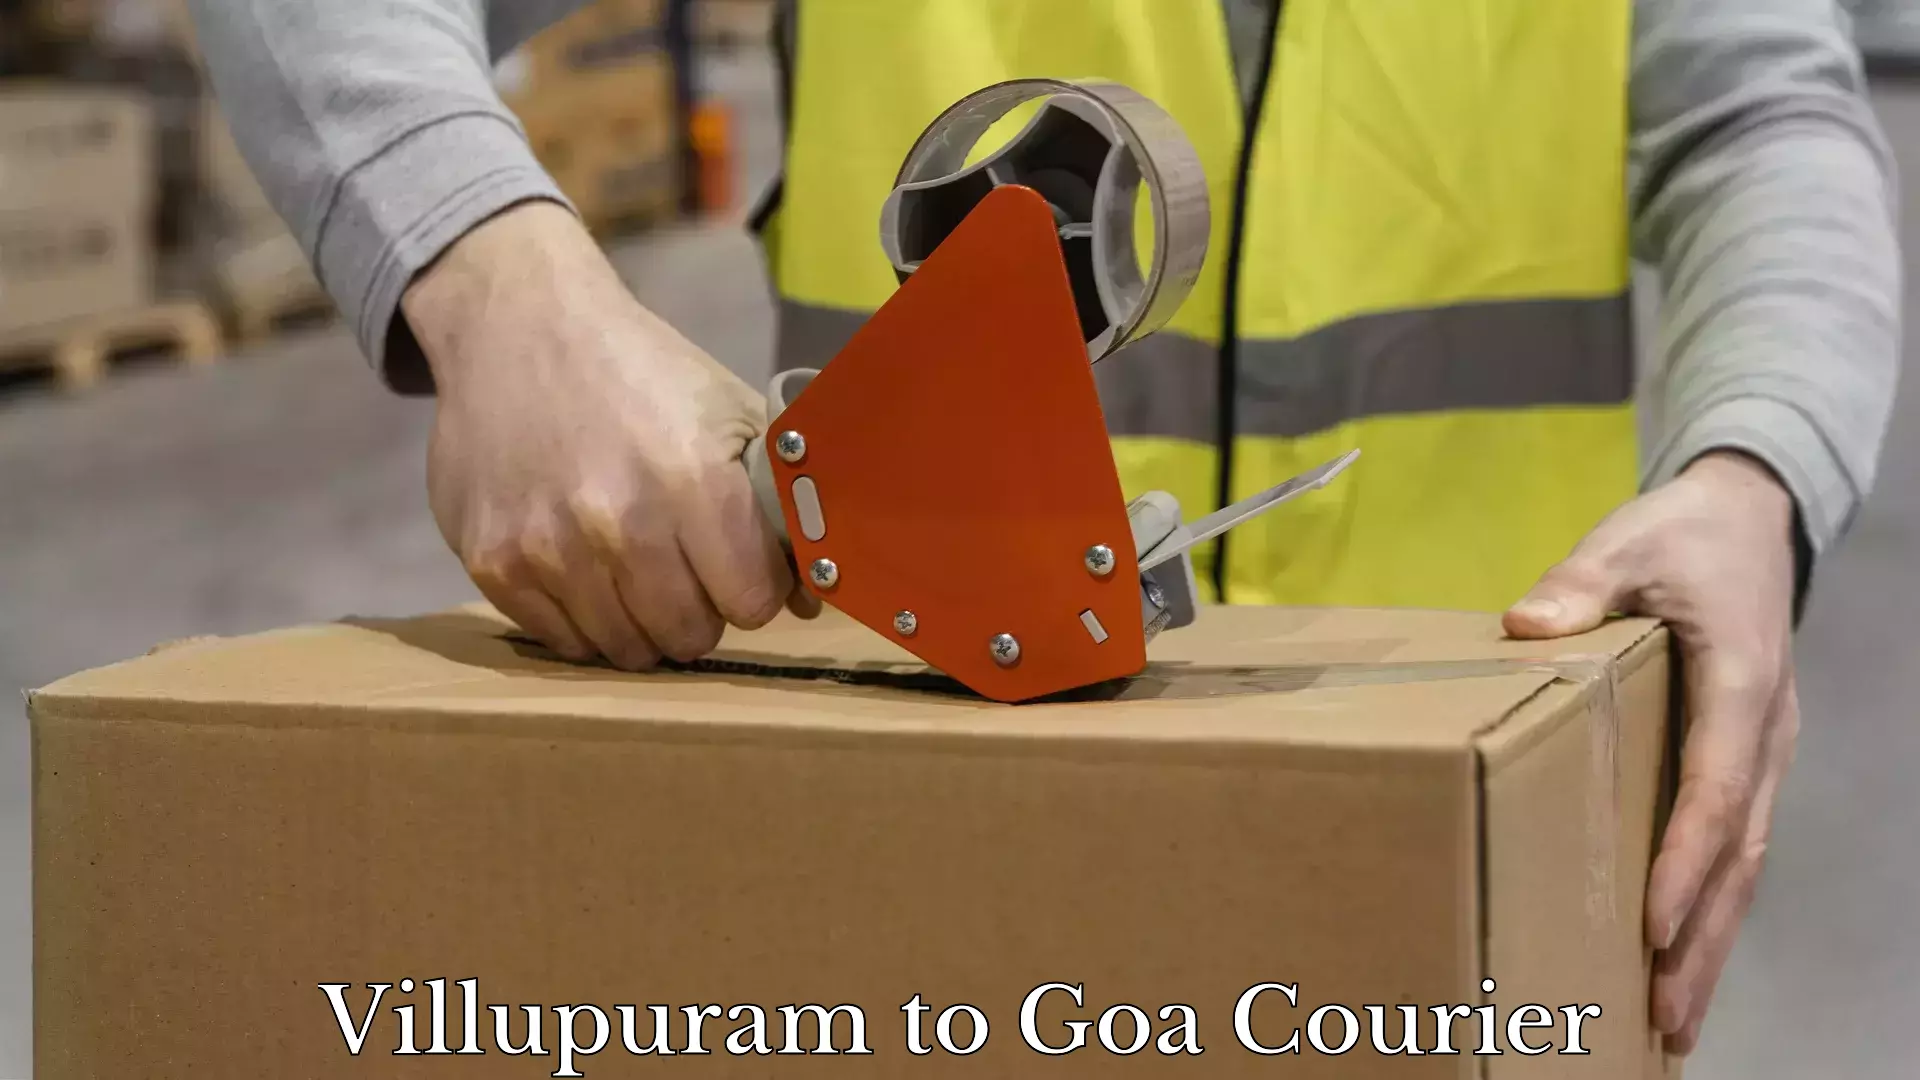 Furniture transport professionals Villupuram to Goa